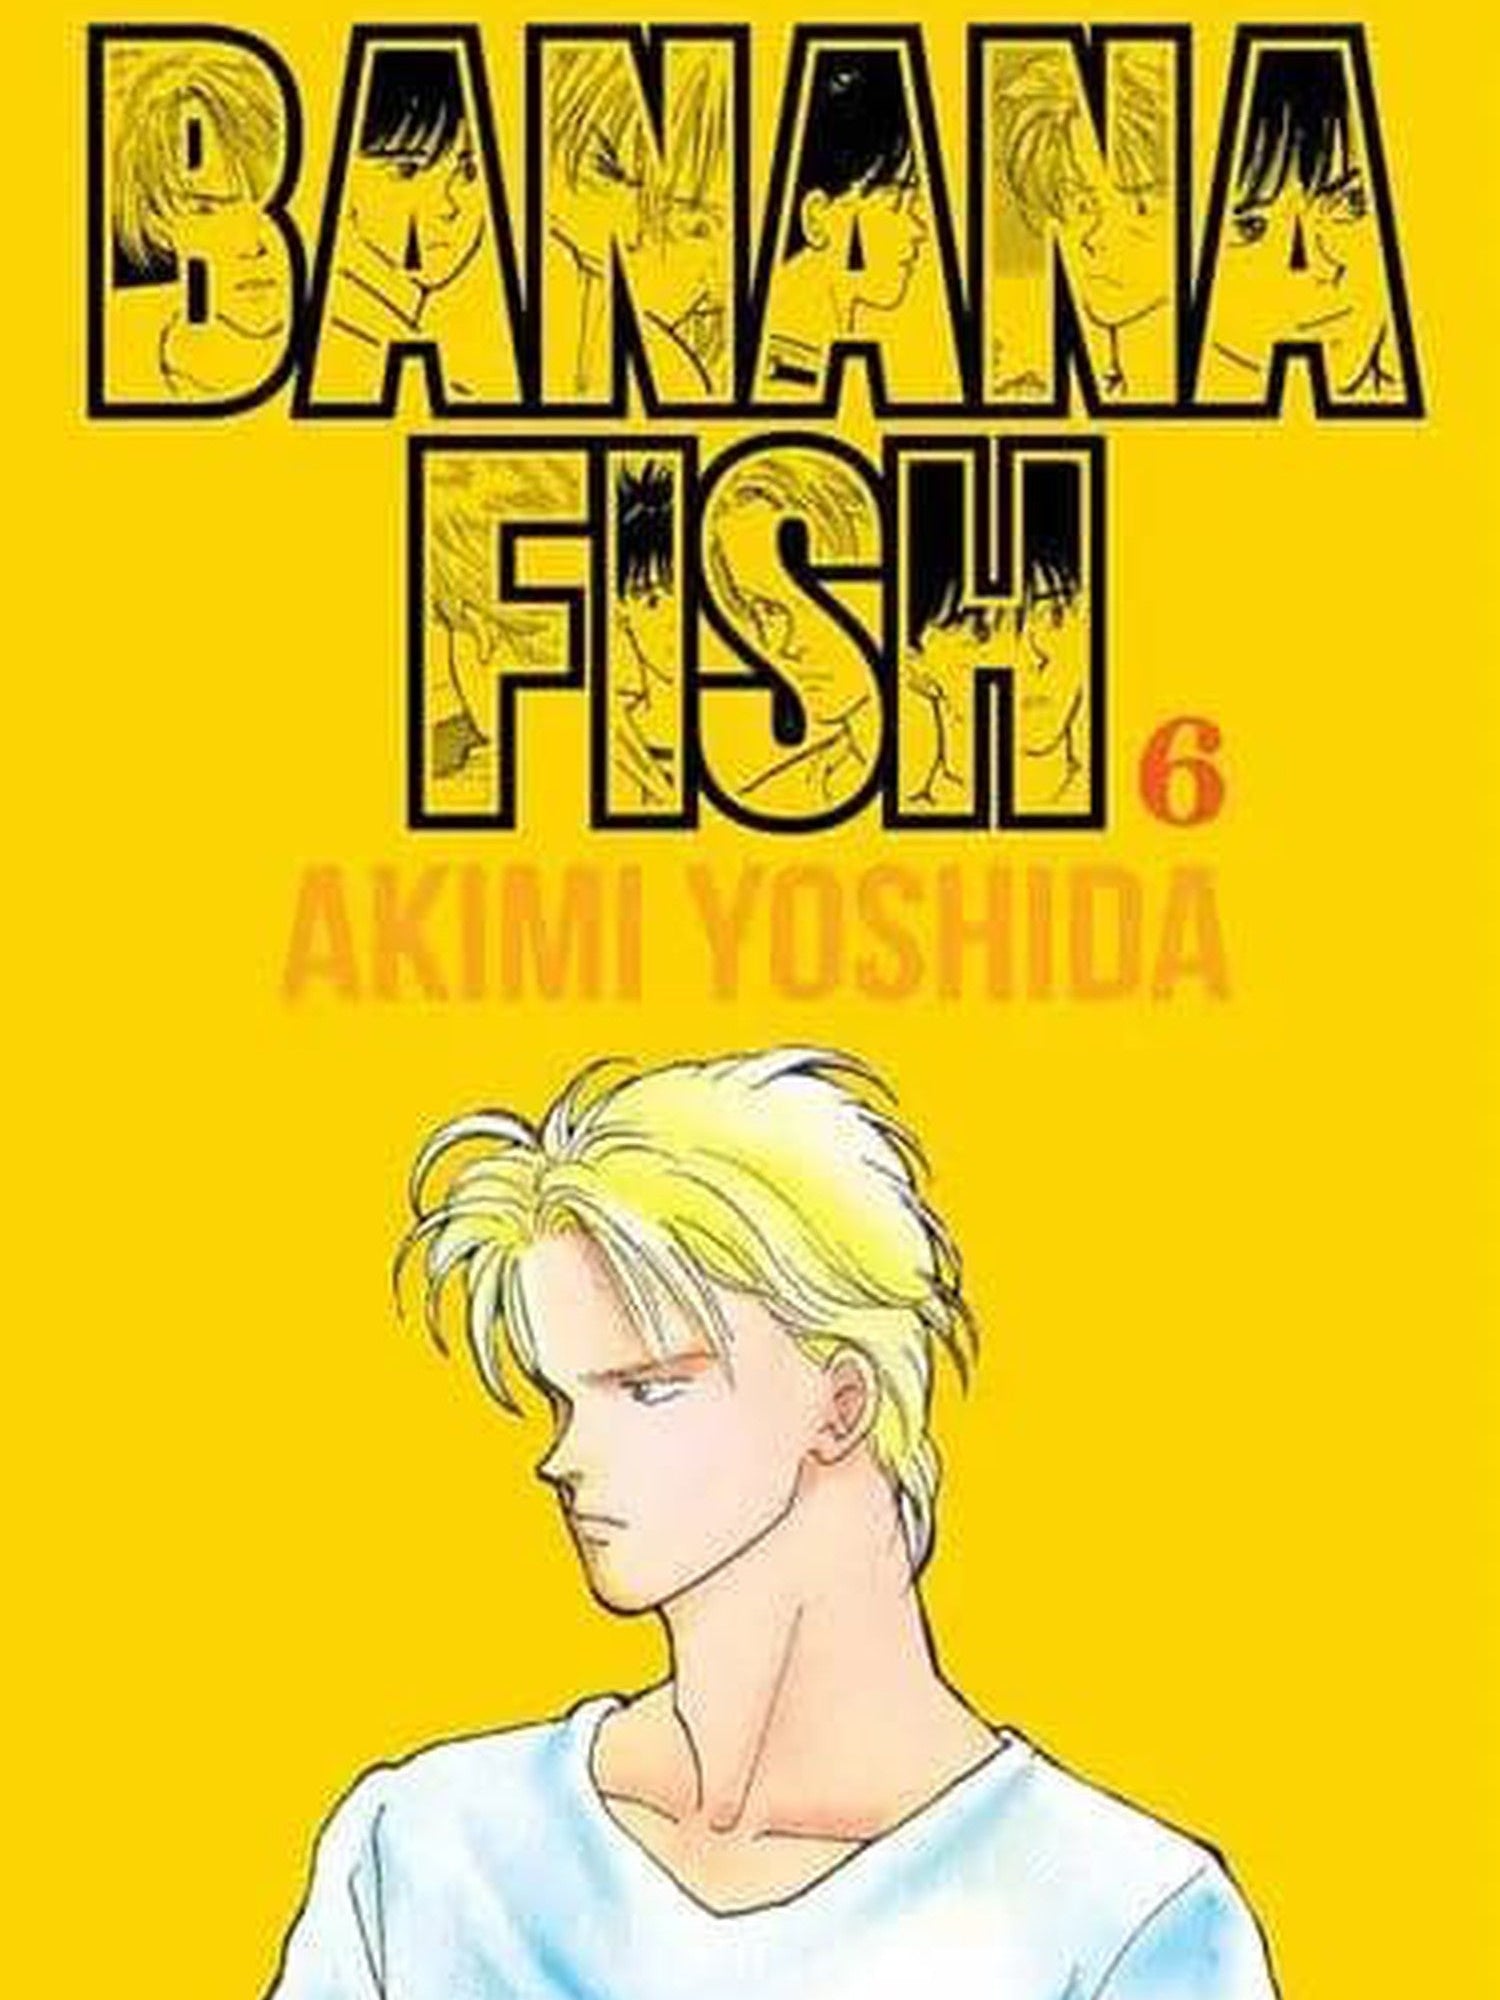 Banana Fish #6